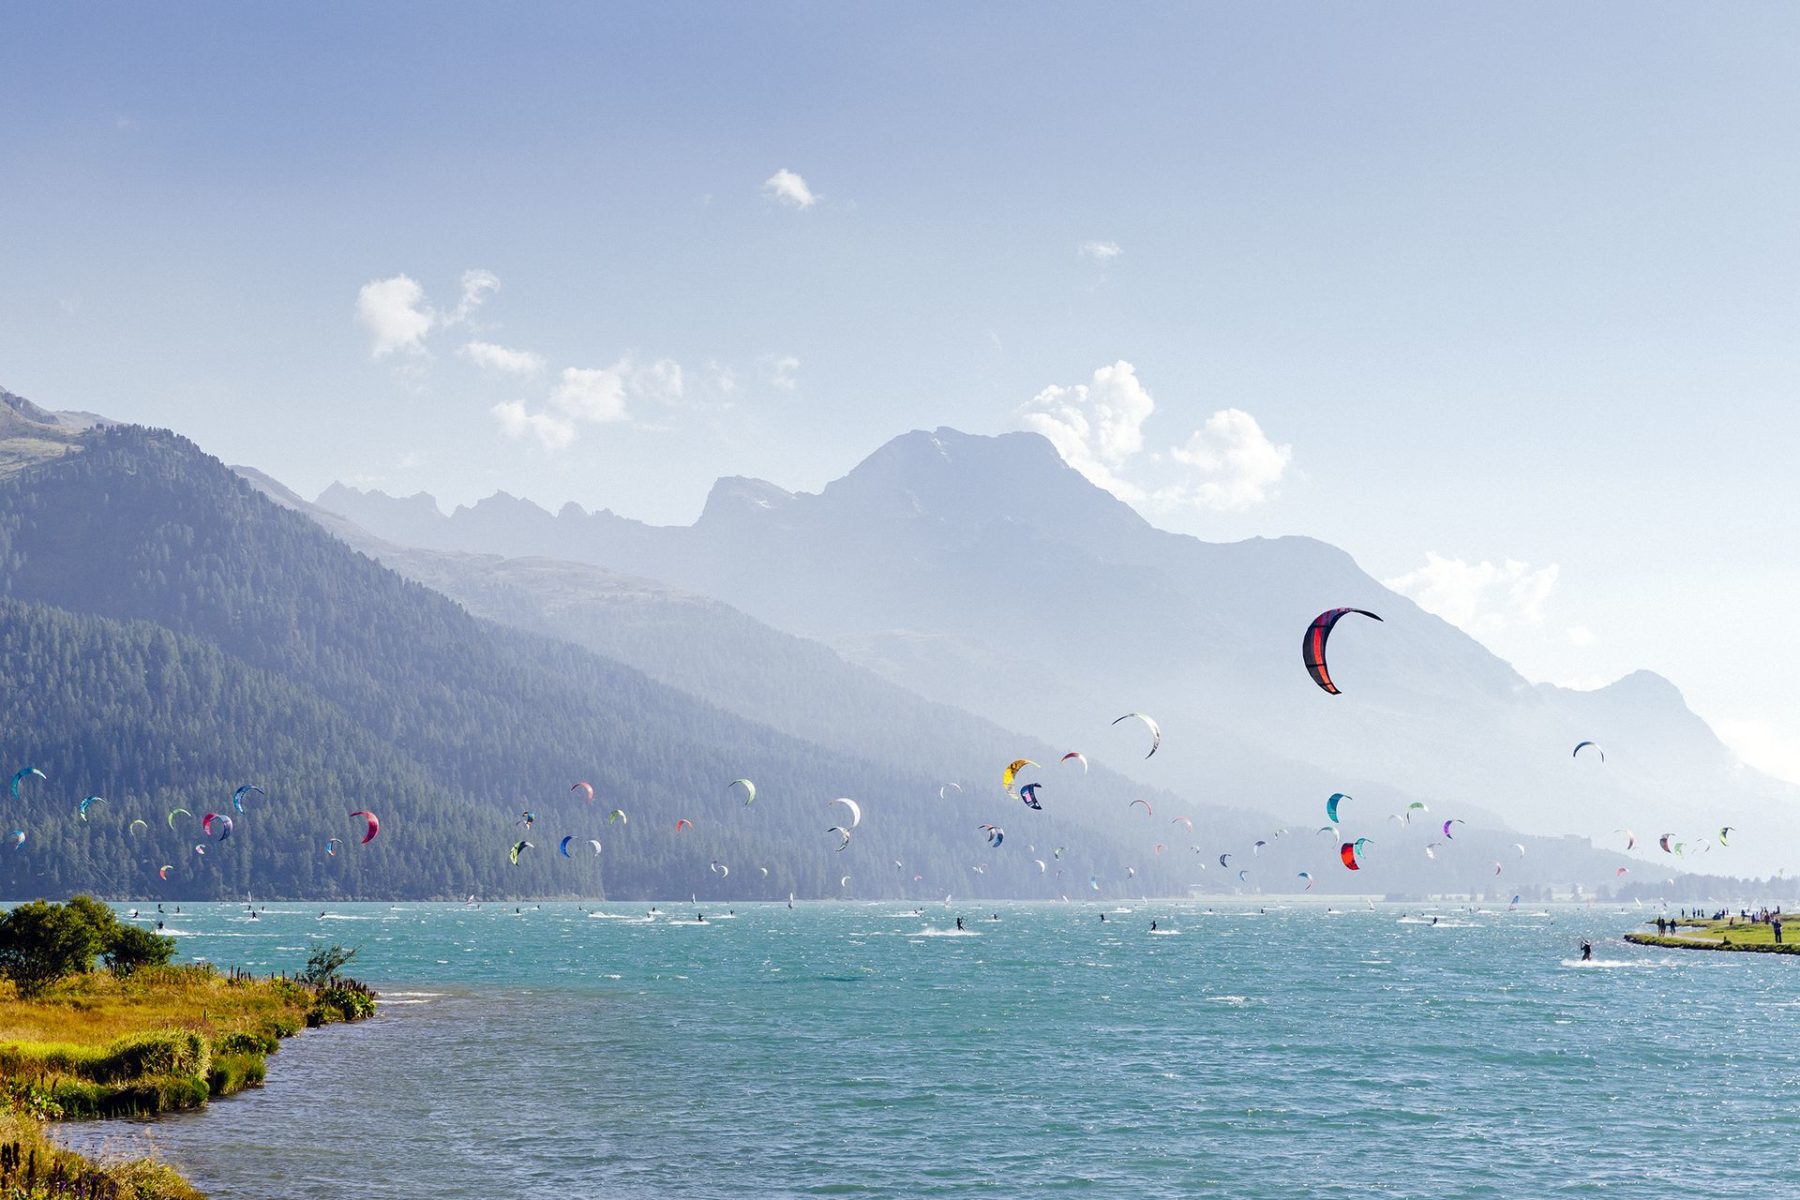 Tra le tante attività da praticare sul lago anche kite surfing